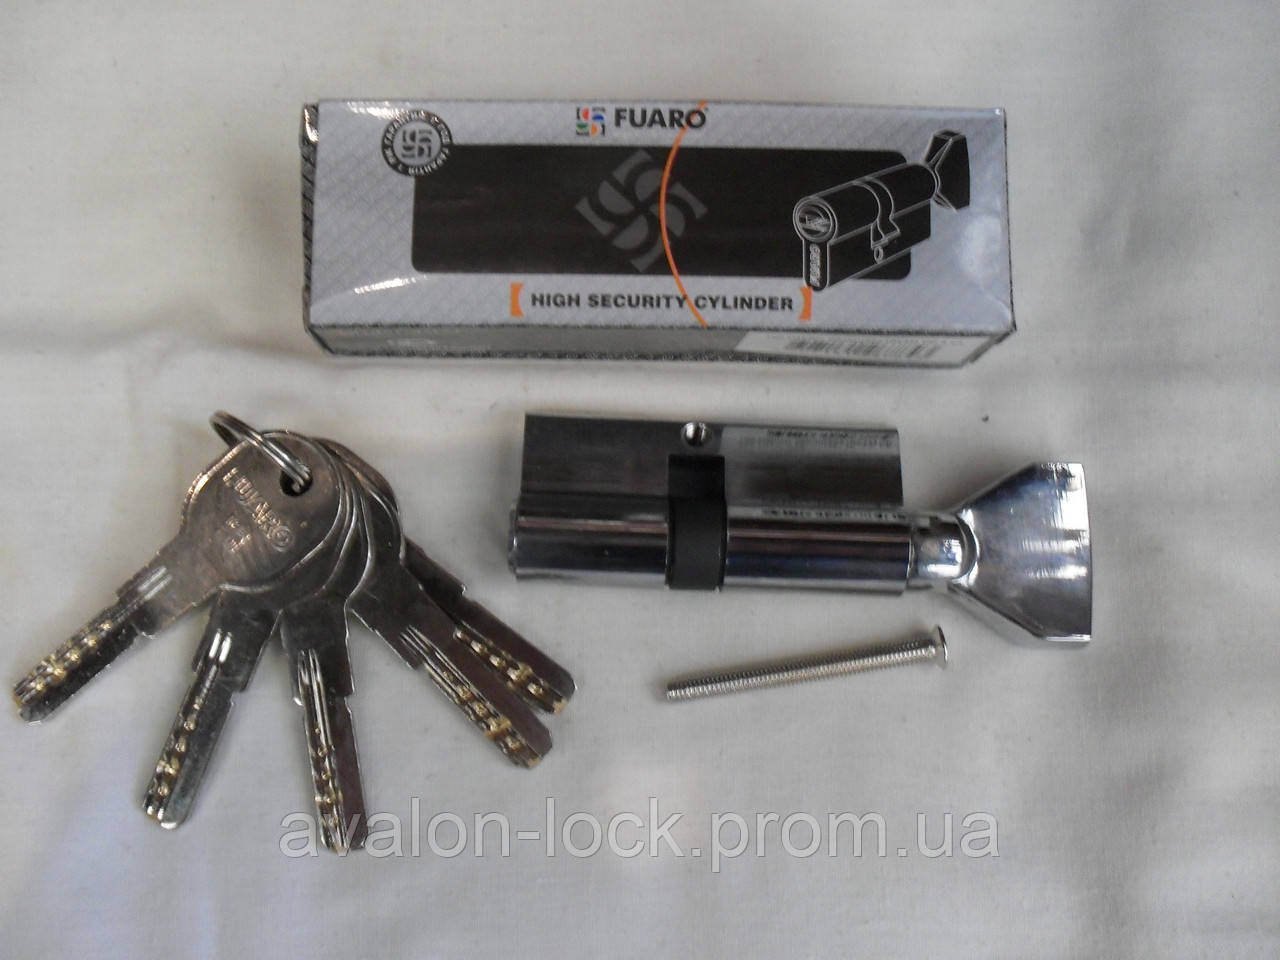 Циліндровий механізм Fuaro DM 68 mm. Латунний, з лазерним ключем, ключ-ключ, хром і золото